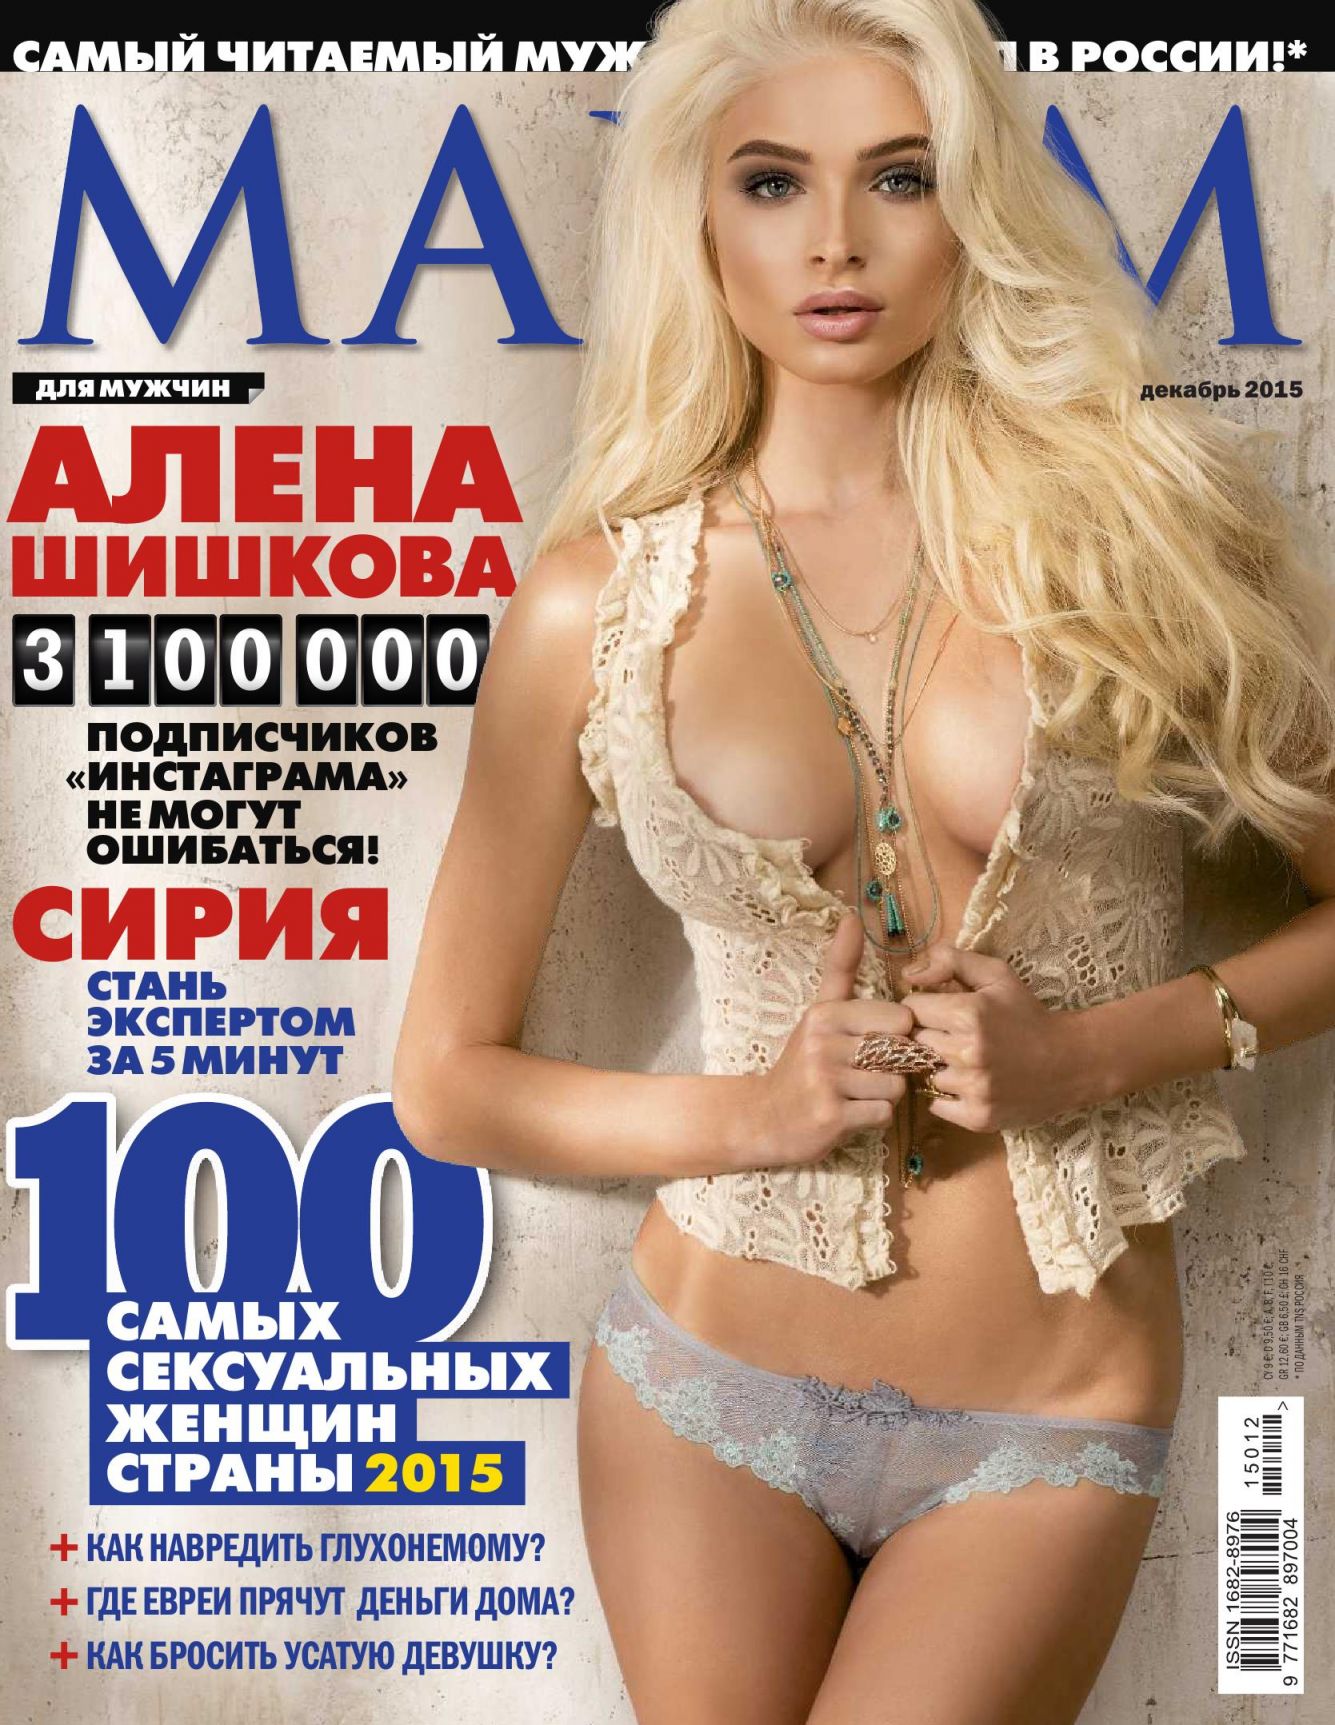 Alena Shishkova Topless Photos Thefappening